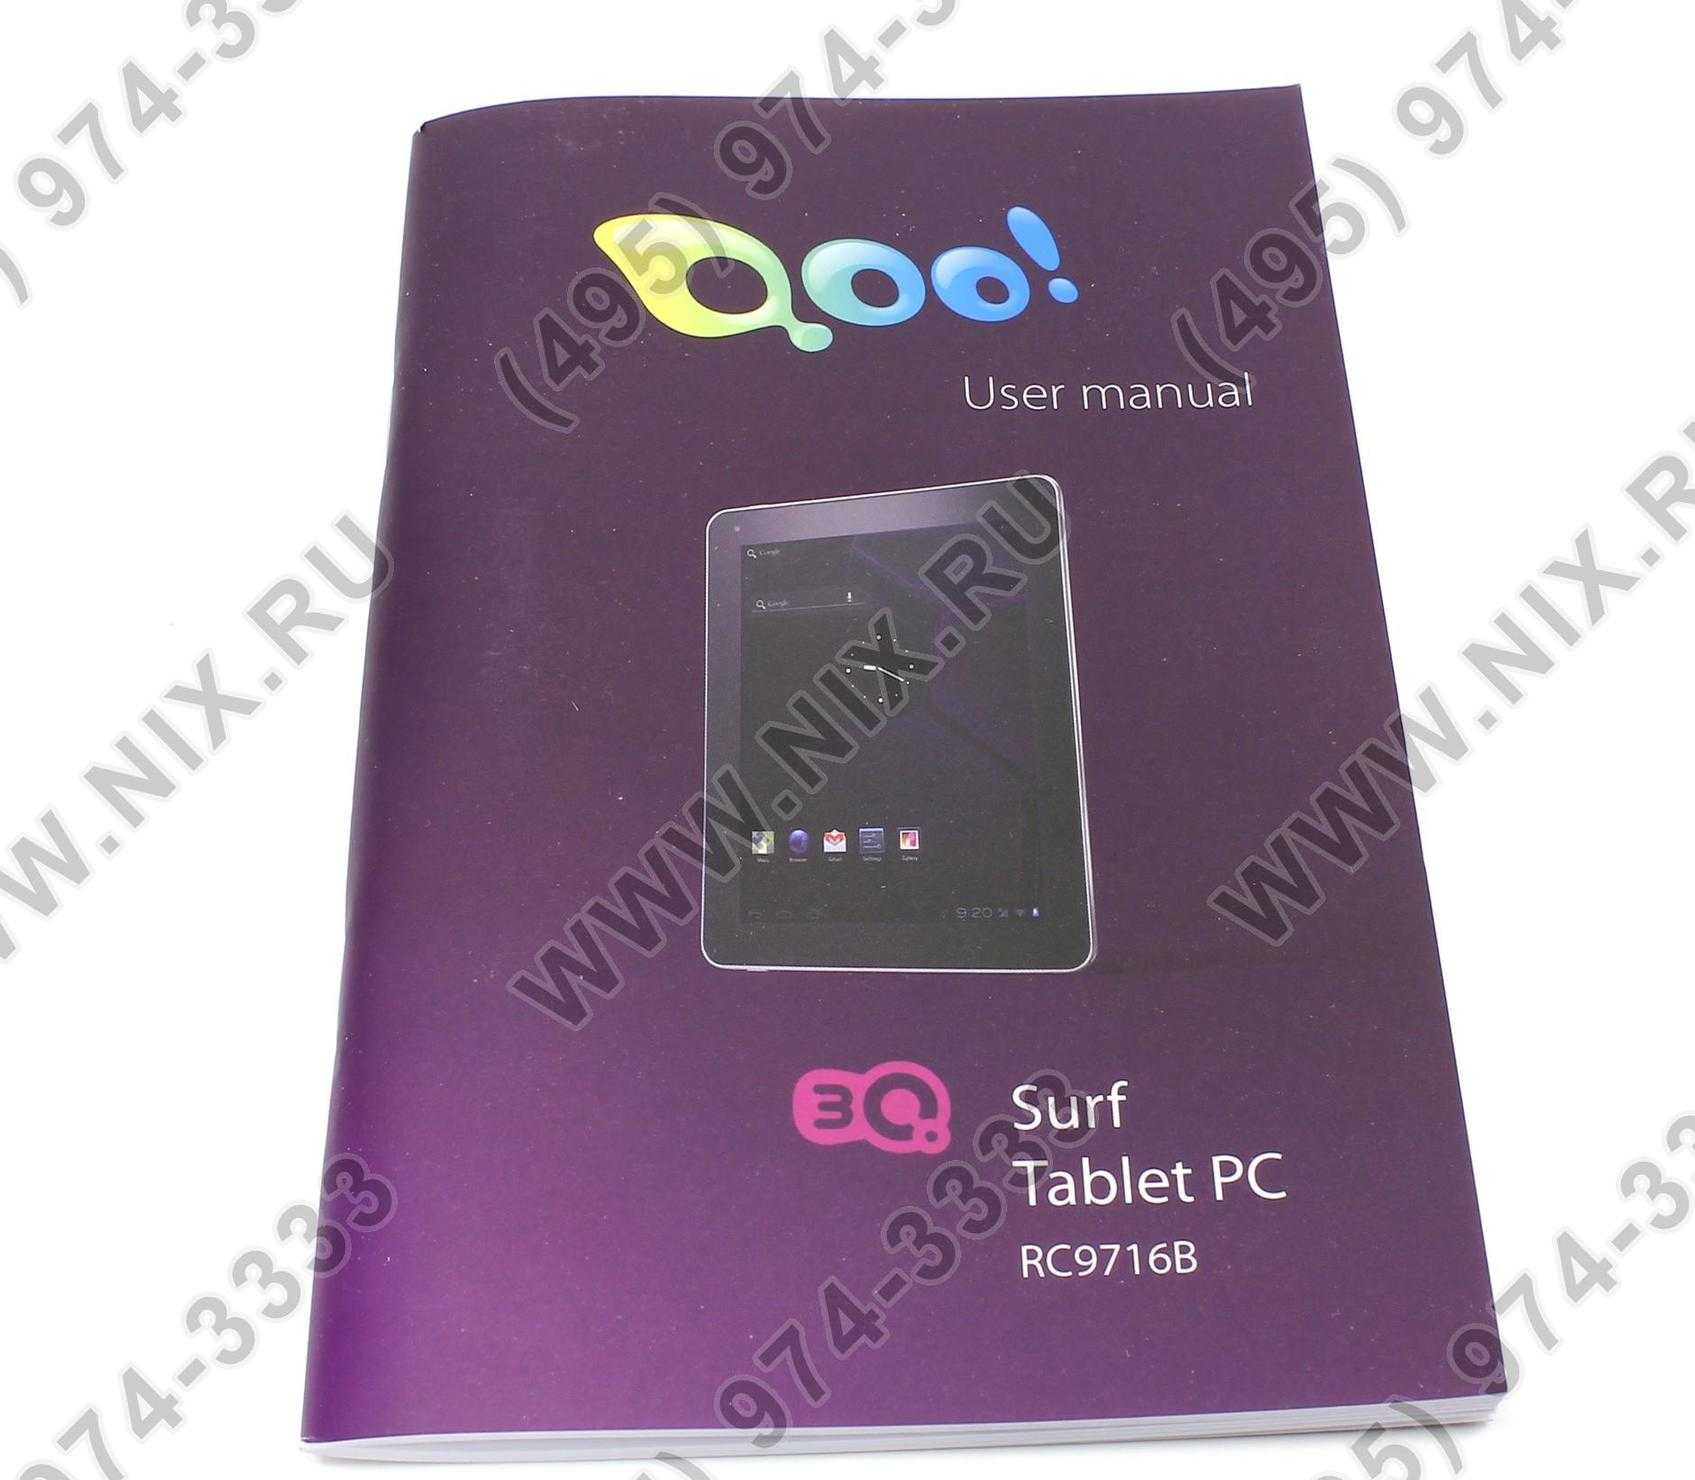 Планшет 3q surf ts1009b 16 гб wifi 3g серебристый — купить, цена и характеристики, отзывы